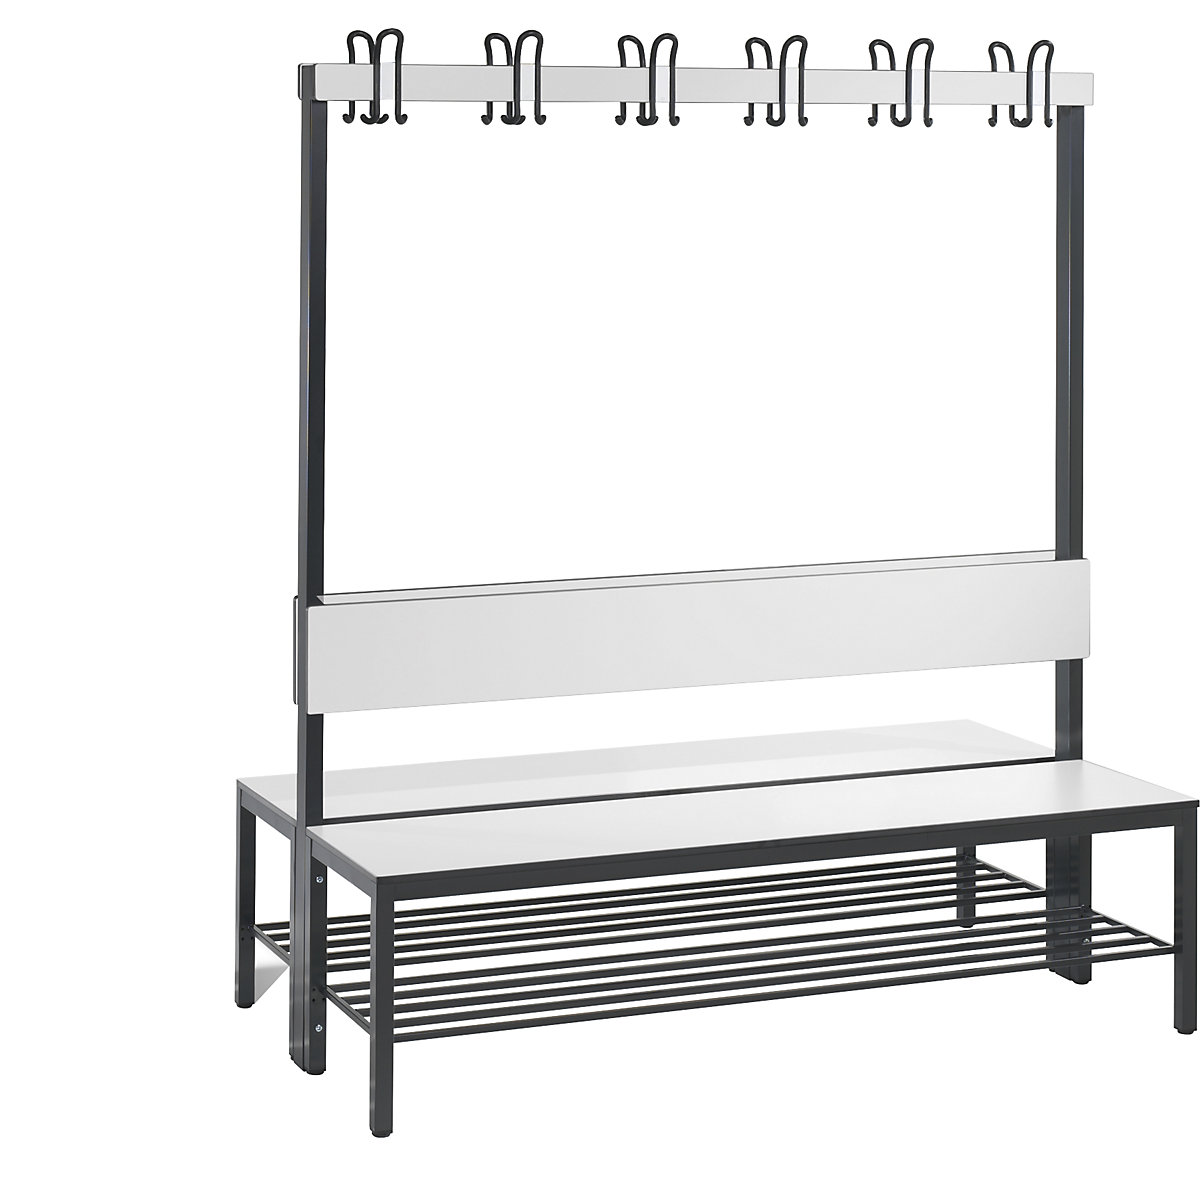 Šatnová lavice BASIC PLUS, oboustranná – C+P, plocha sedáku z HPL, lišta s háky, rošt na obuv, délka 1500 mm, bílá-9